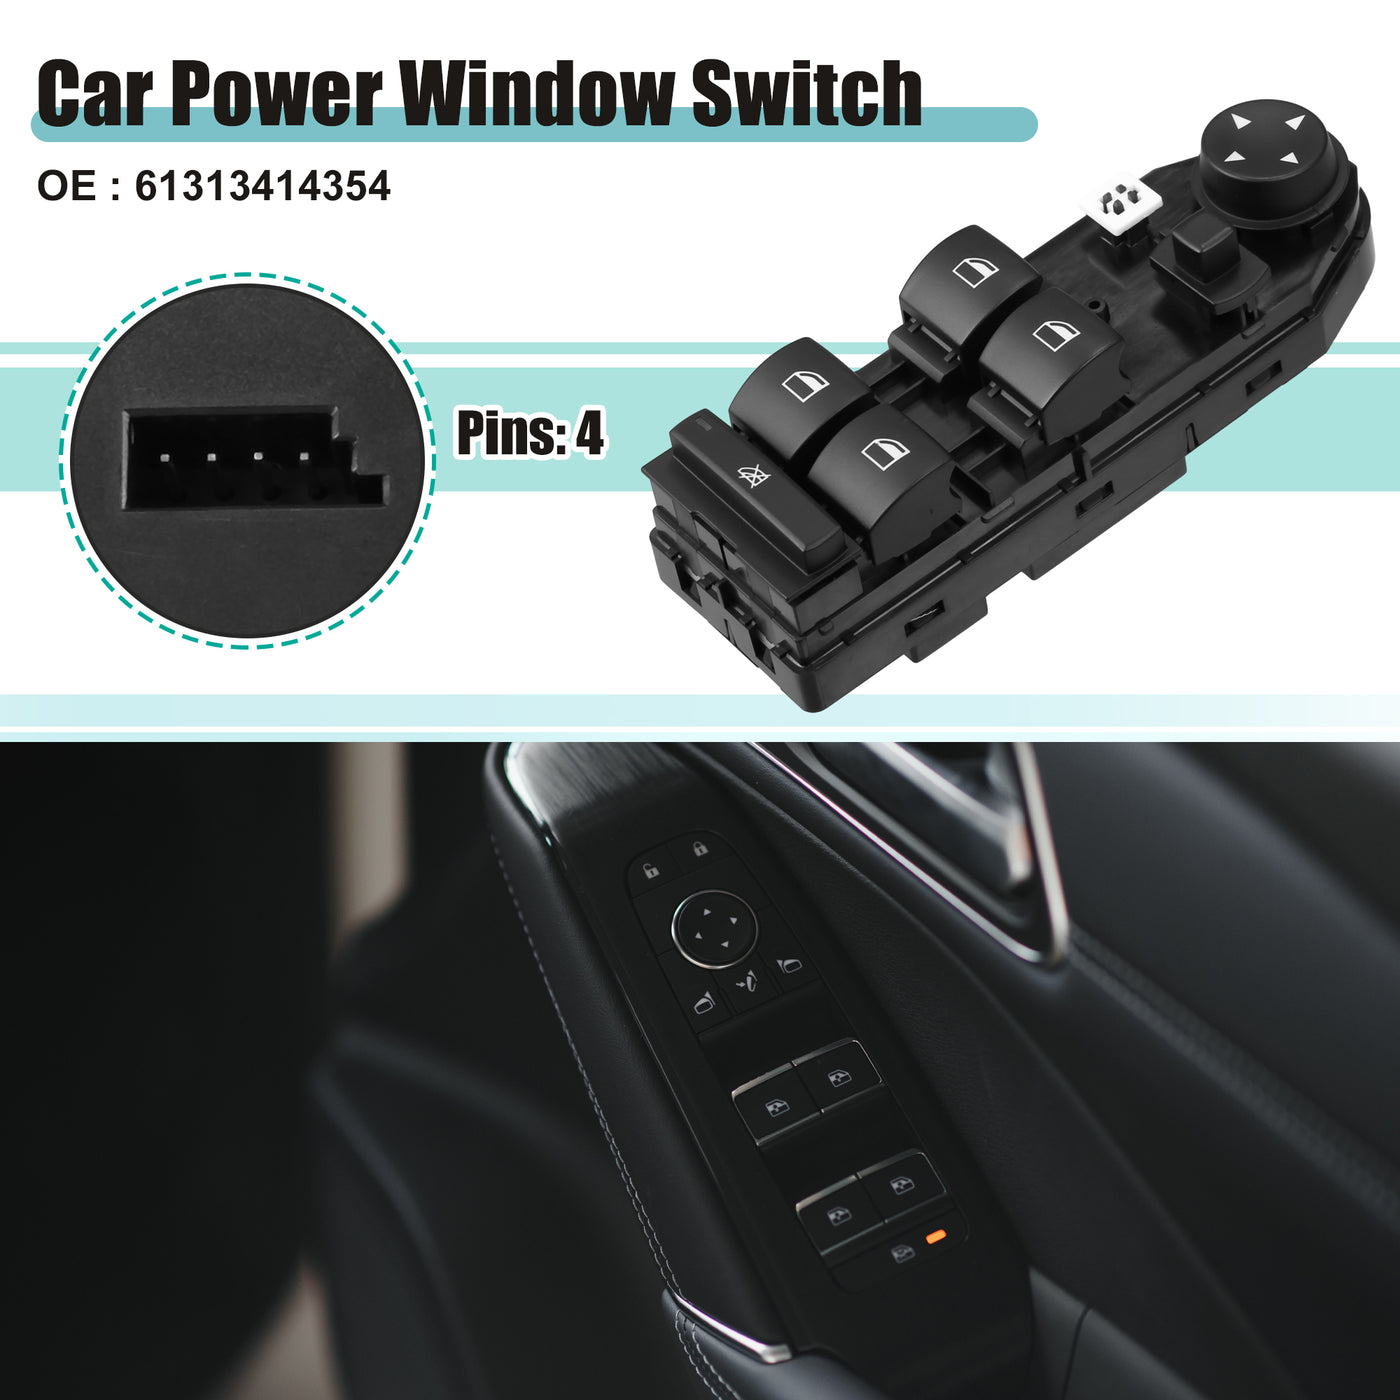 ACROPIX Power Window Switch Window Control Switch Fit for BMW X3 2004 2.5i 3.0i 2.5L L6 - Gas 3.0L L6 - Gas No.61313414354 - Pack of 1